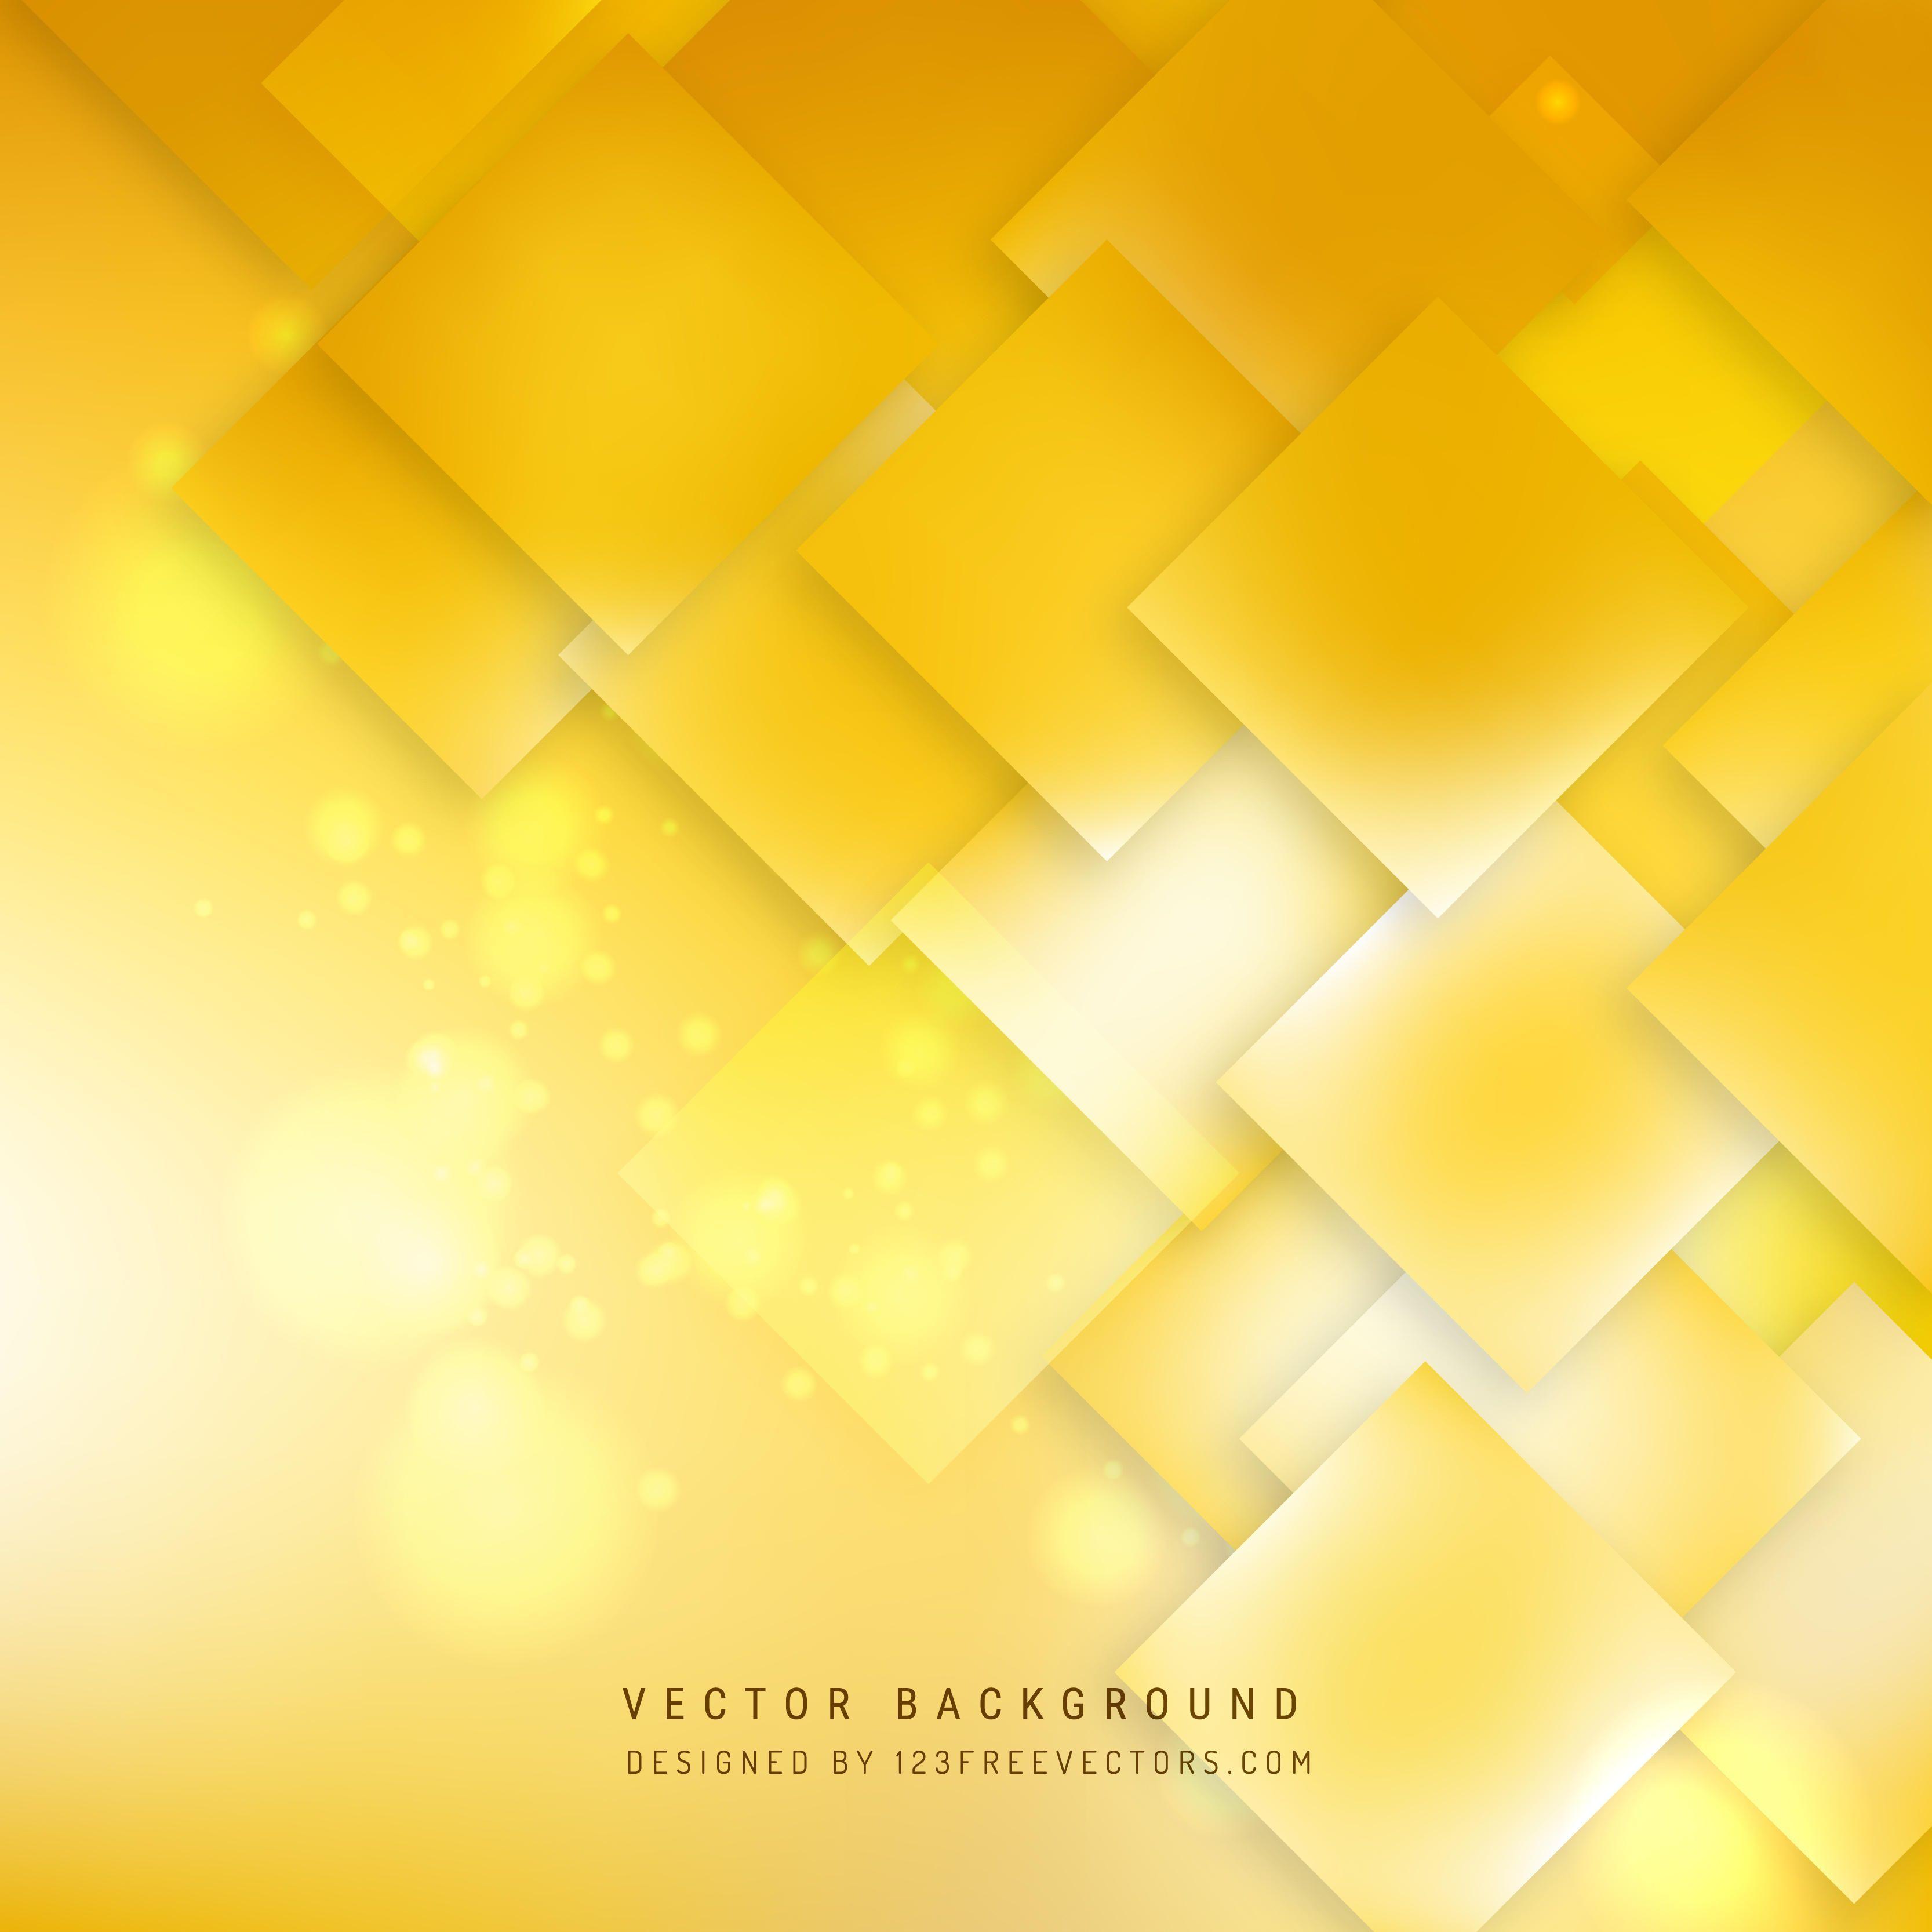 Yellow Background Vectors. Download Free Vector Art & Graphics